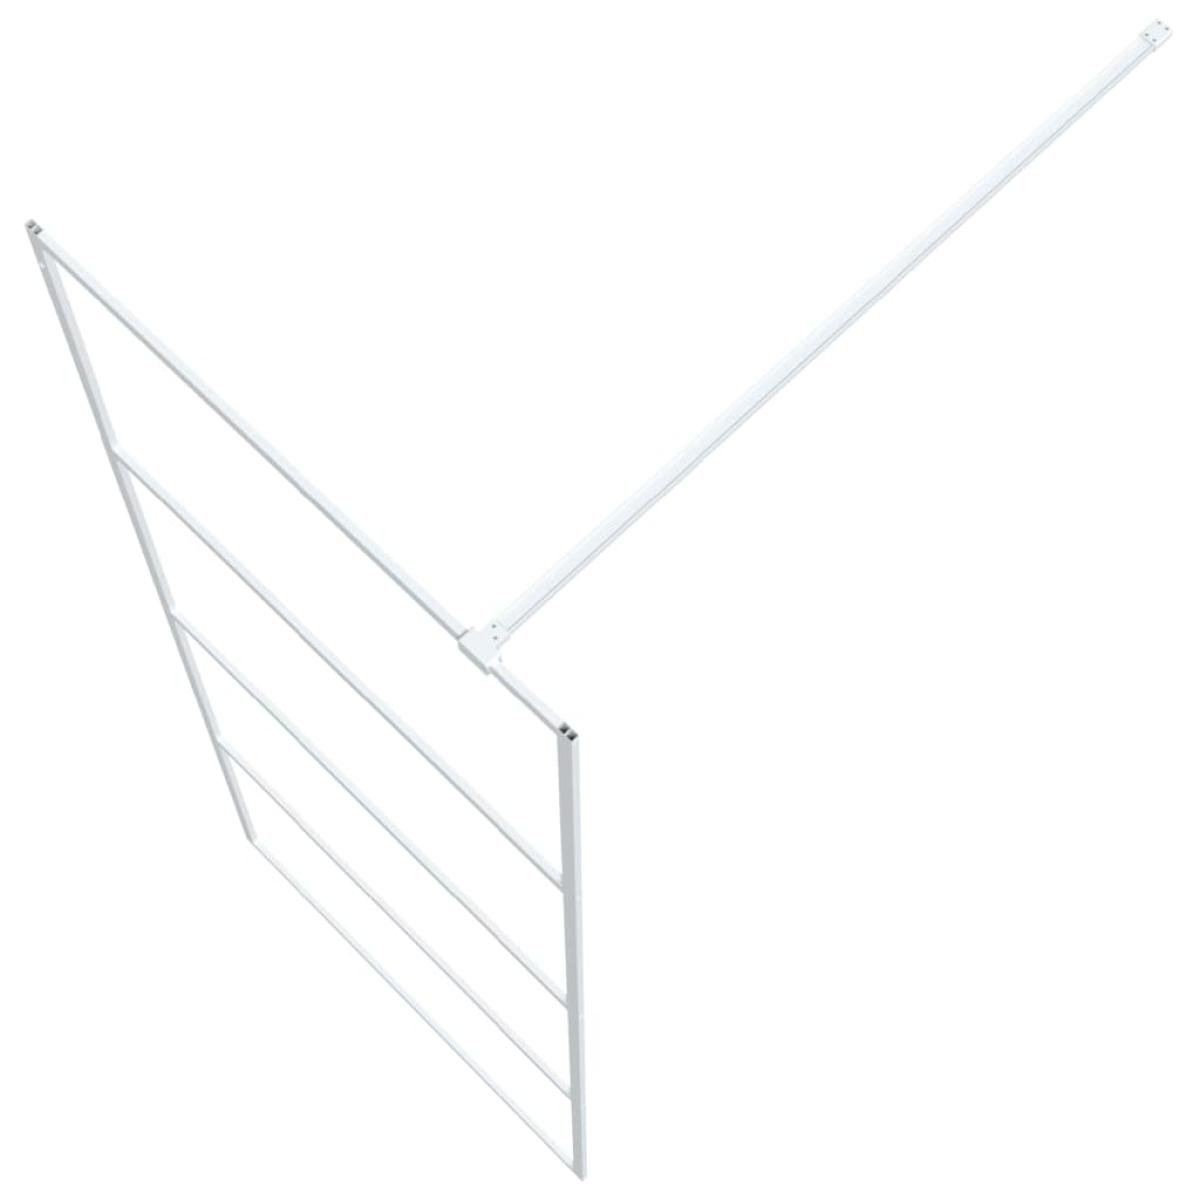 Mampara de ducha vidrio ESG transparente blanco 80x195 cm